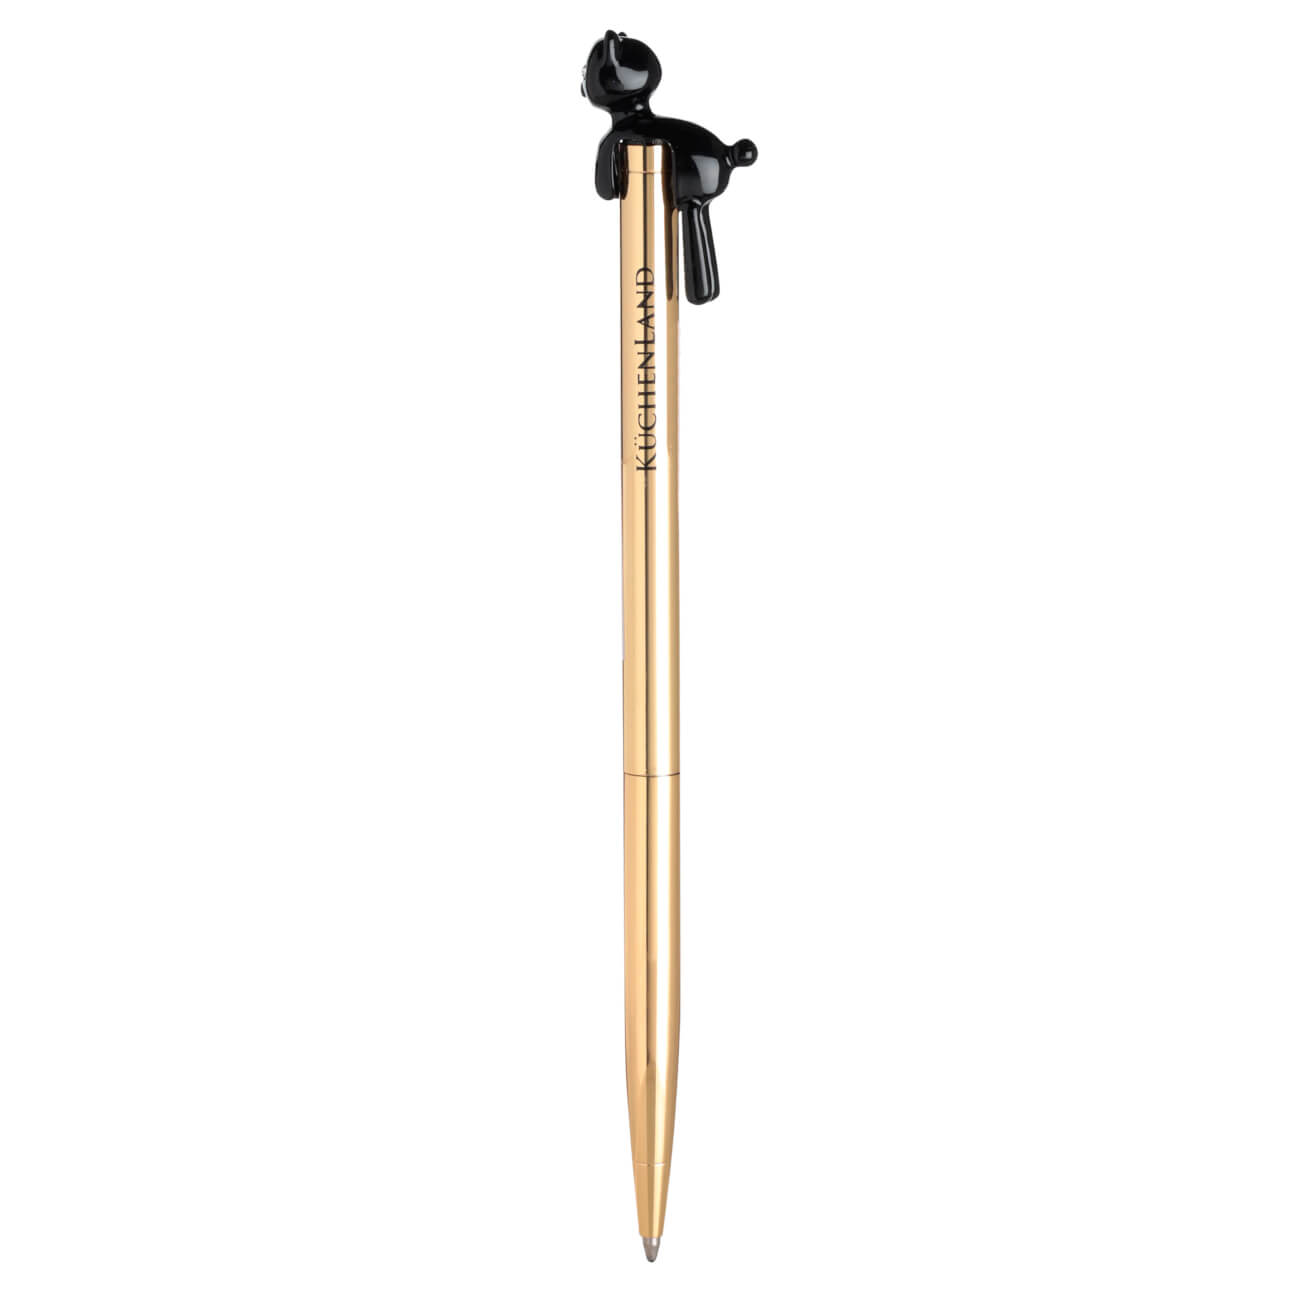 Ручка шариковая, 14 см, с фигуркой, металл, золотистая, Черный кот, Draw figure ручка шариковая 15 см с фигуркой металл золотистая луна draw figure